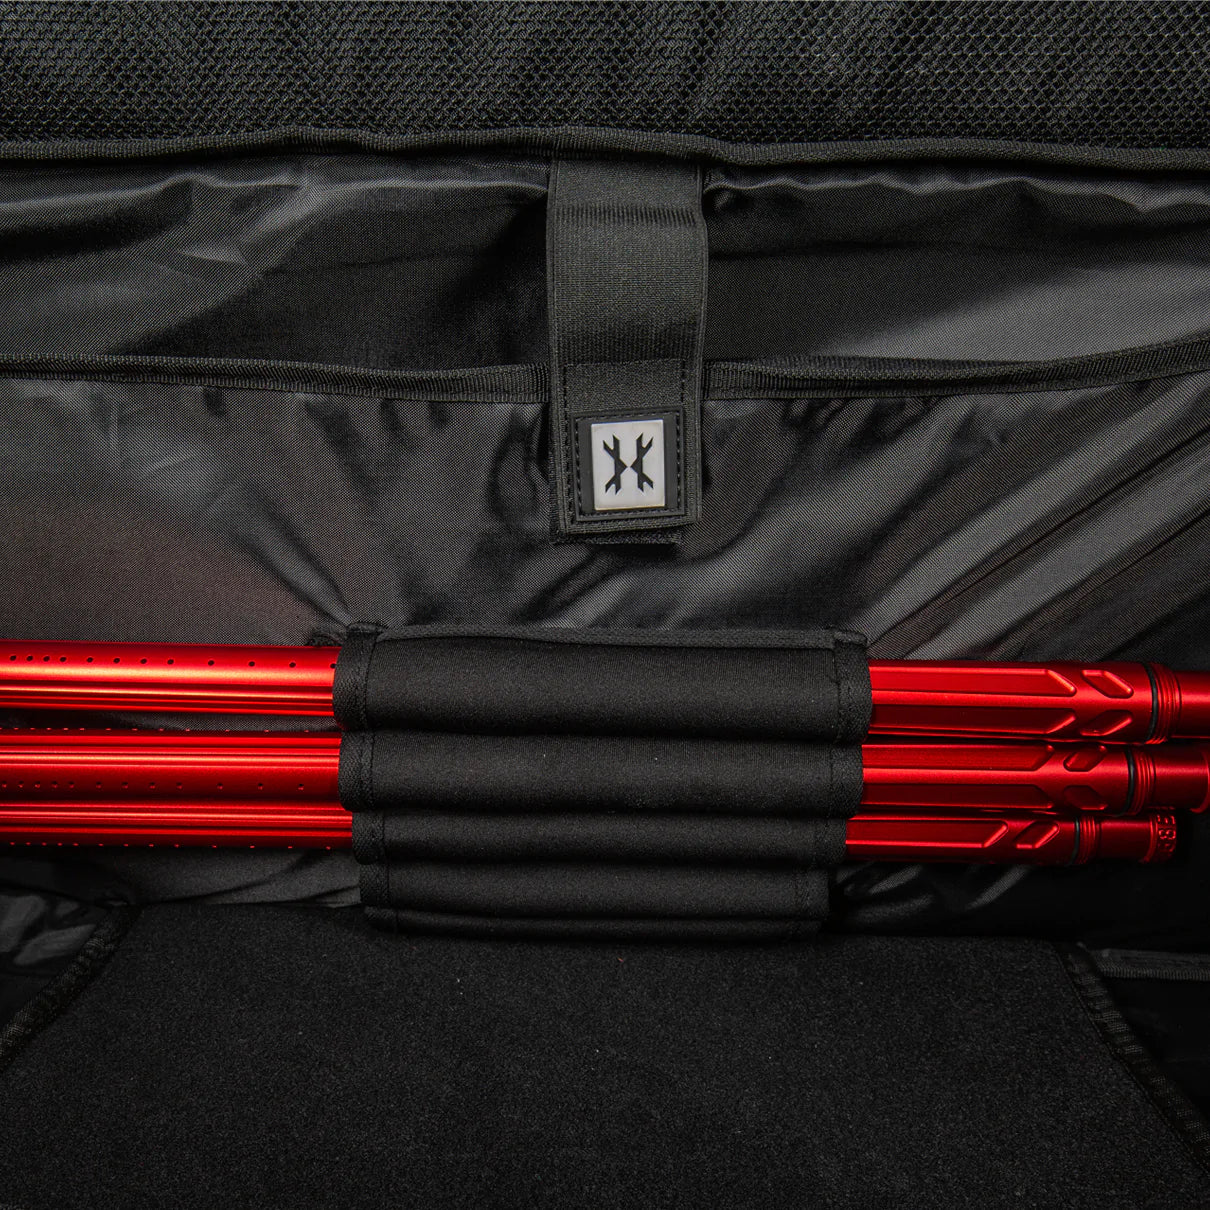 Expand 75L - Roller Gear Bag - Shroud Blackout | Paintball Gear Bag | Hk Army